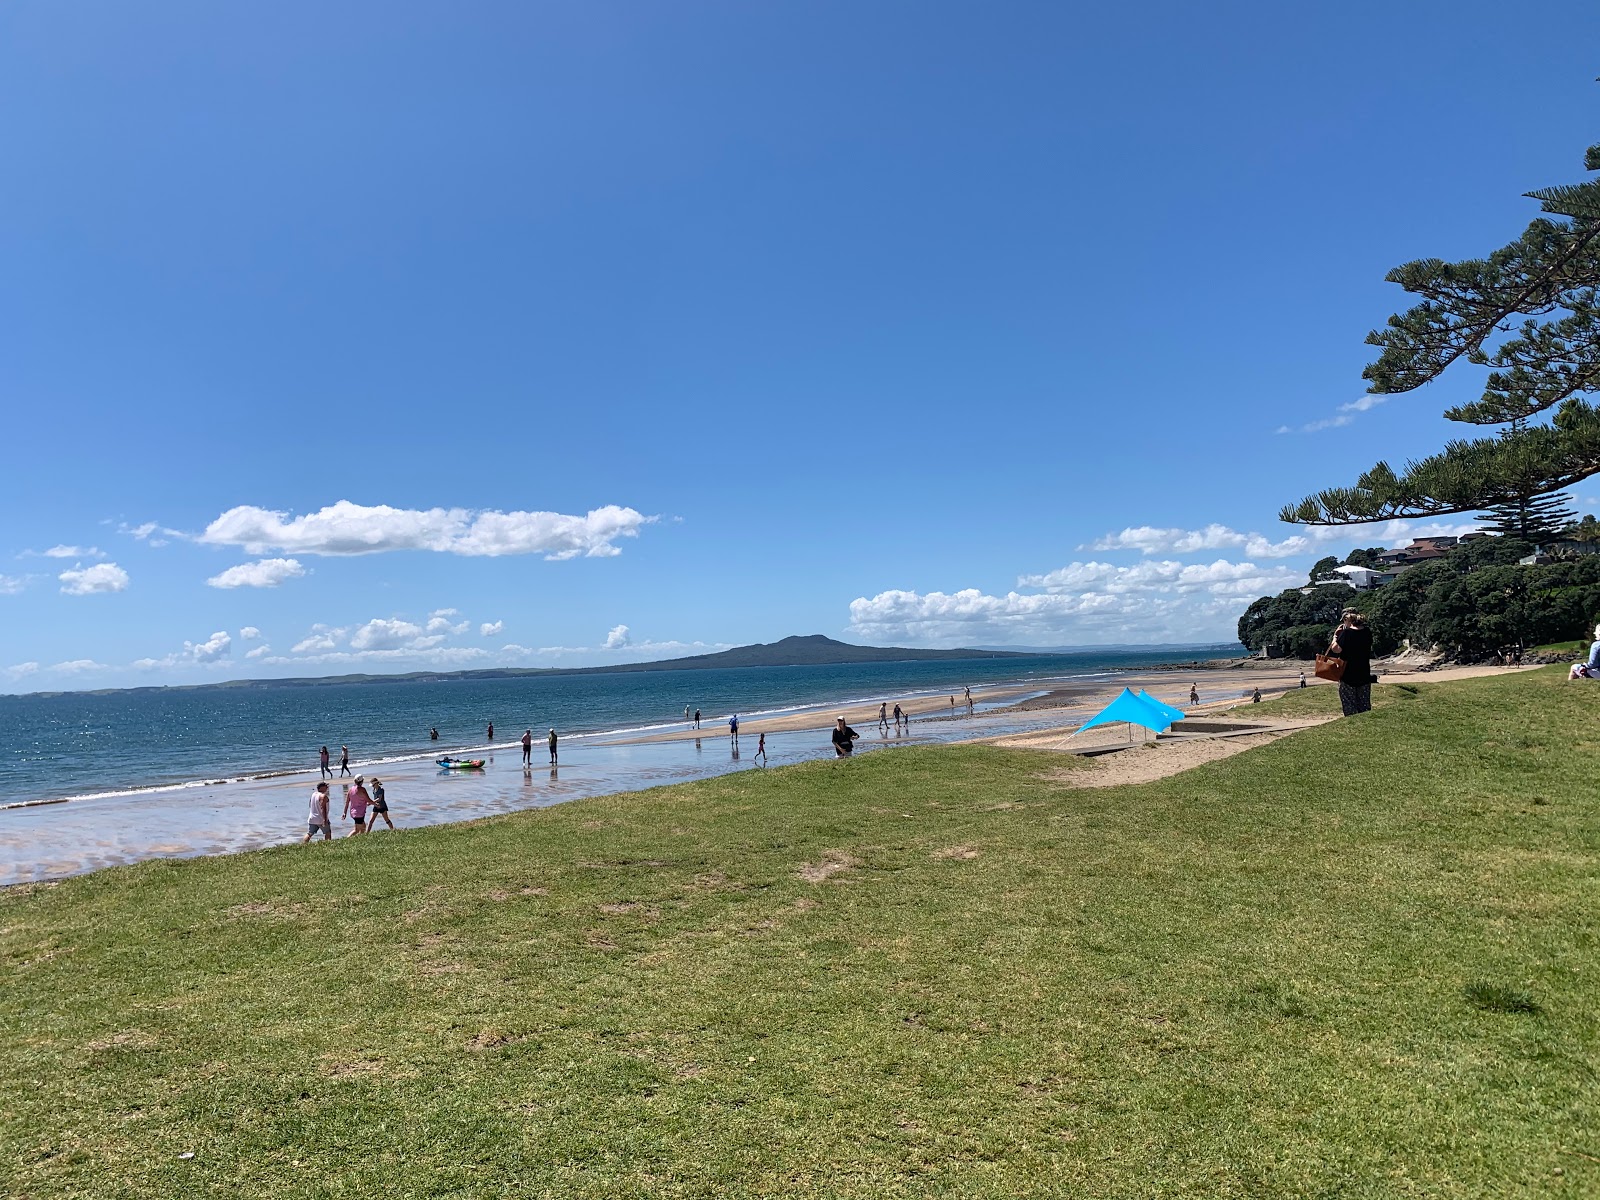 Mairangi Bay Beach'in fotoğrafı geniş plaj ile birlikte